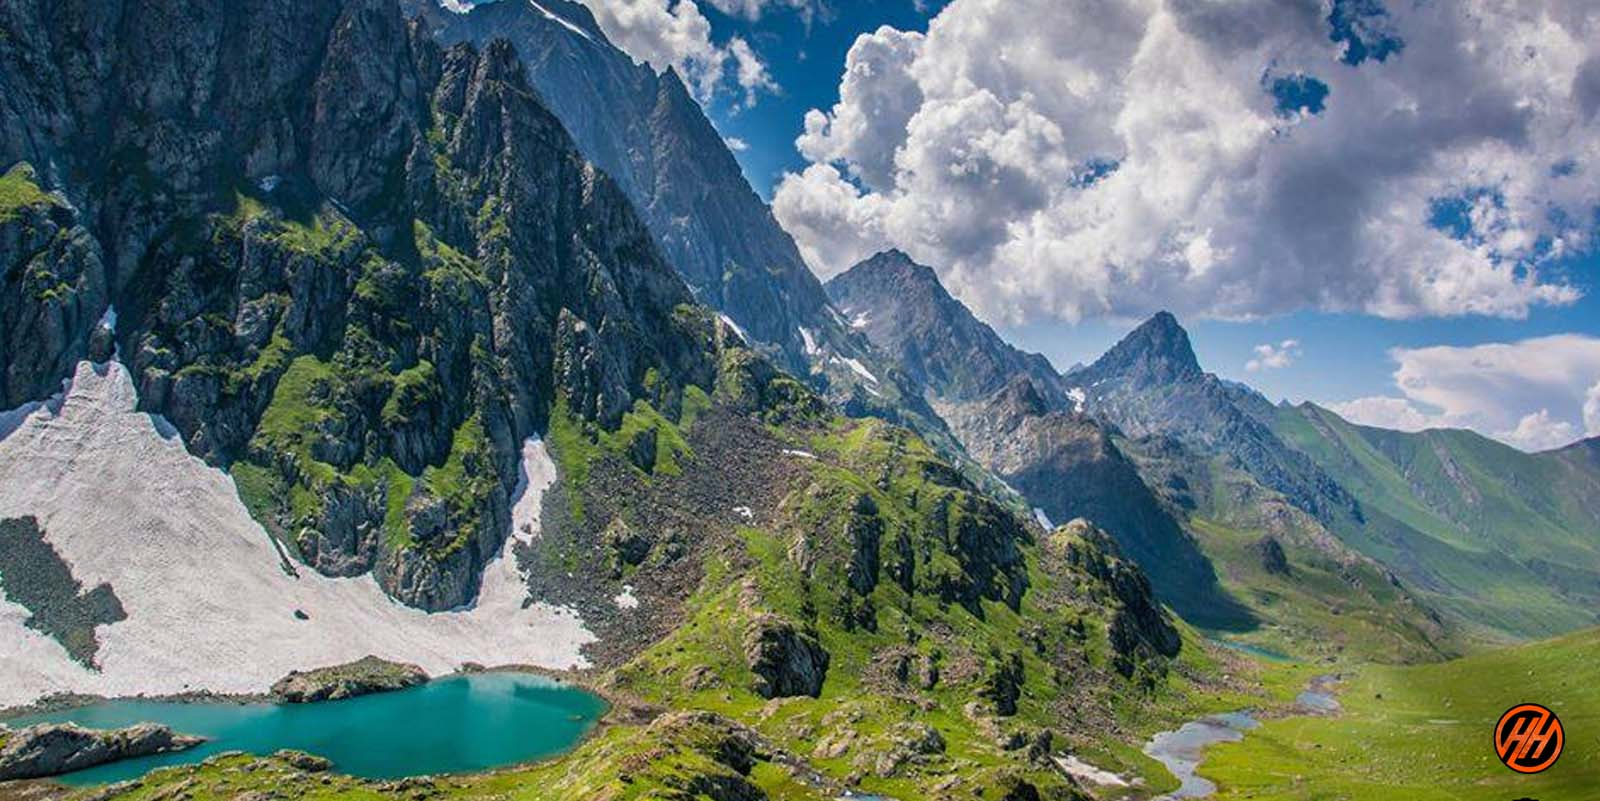 Beautiful mountains in Kashmir Great Lakes Trek